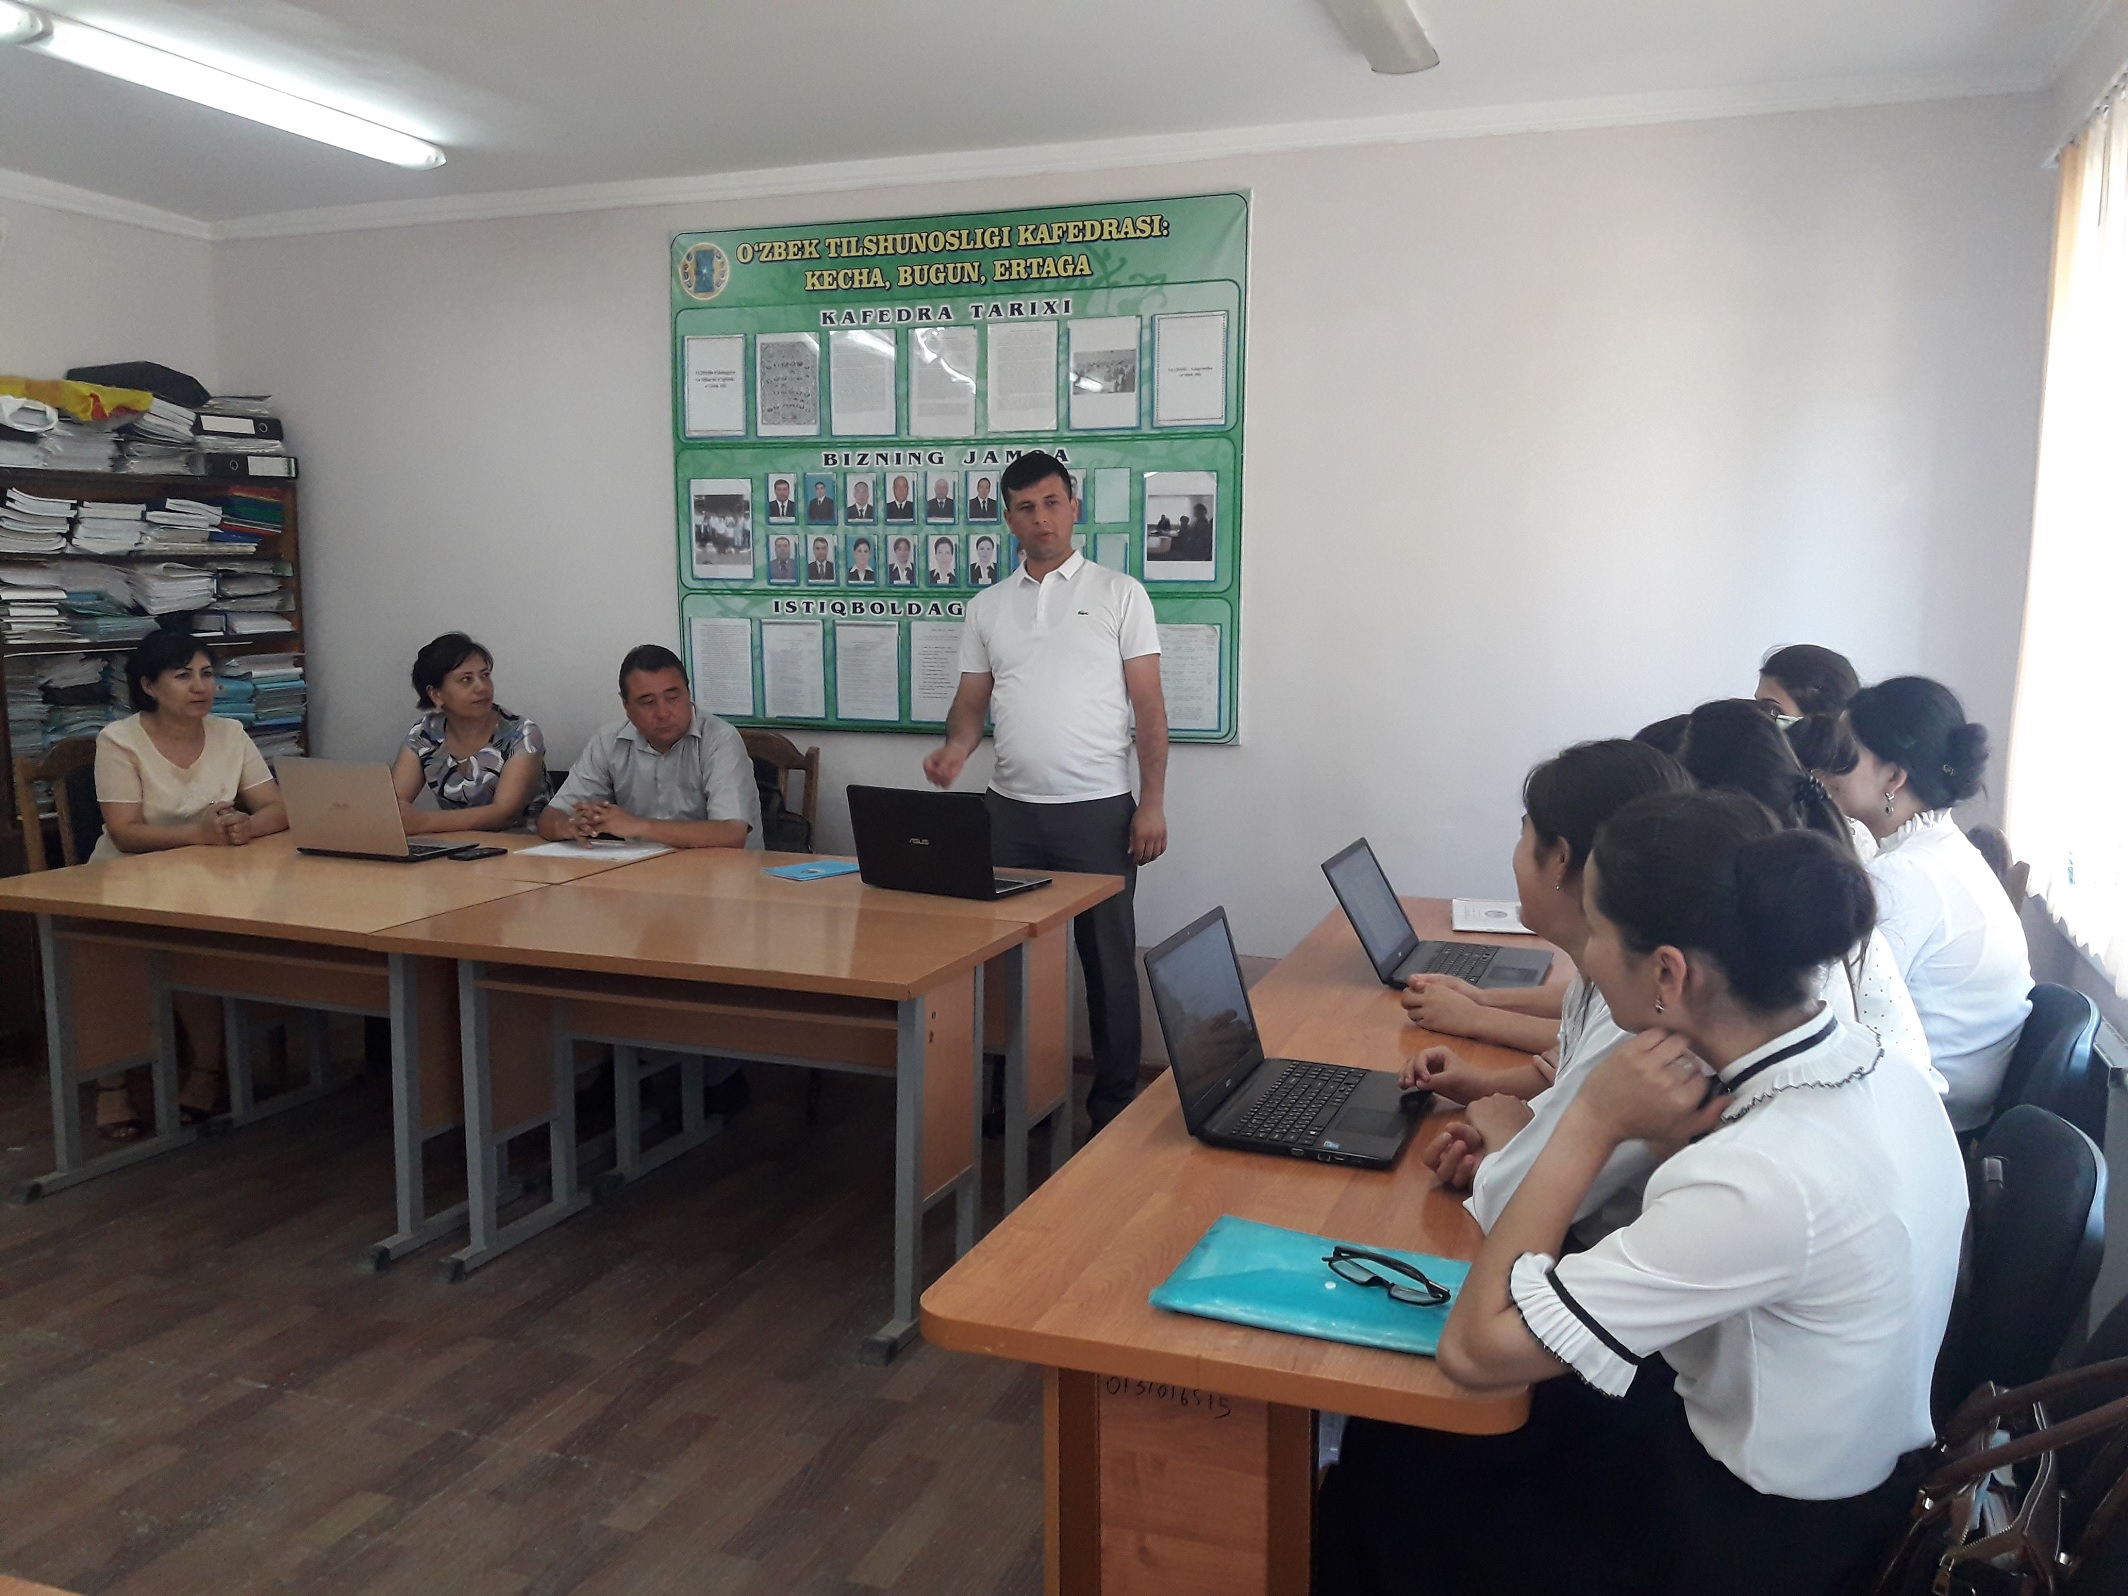 В этом году дестого июня кафедра узбекской литературы научно-техническом семинаре преподаватель С.Атажонов читал лекцию в методе кейс-стадии по теме п